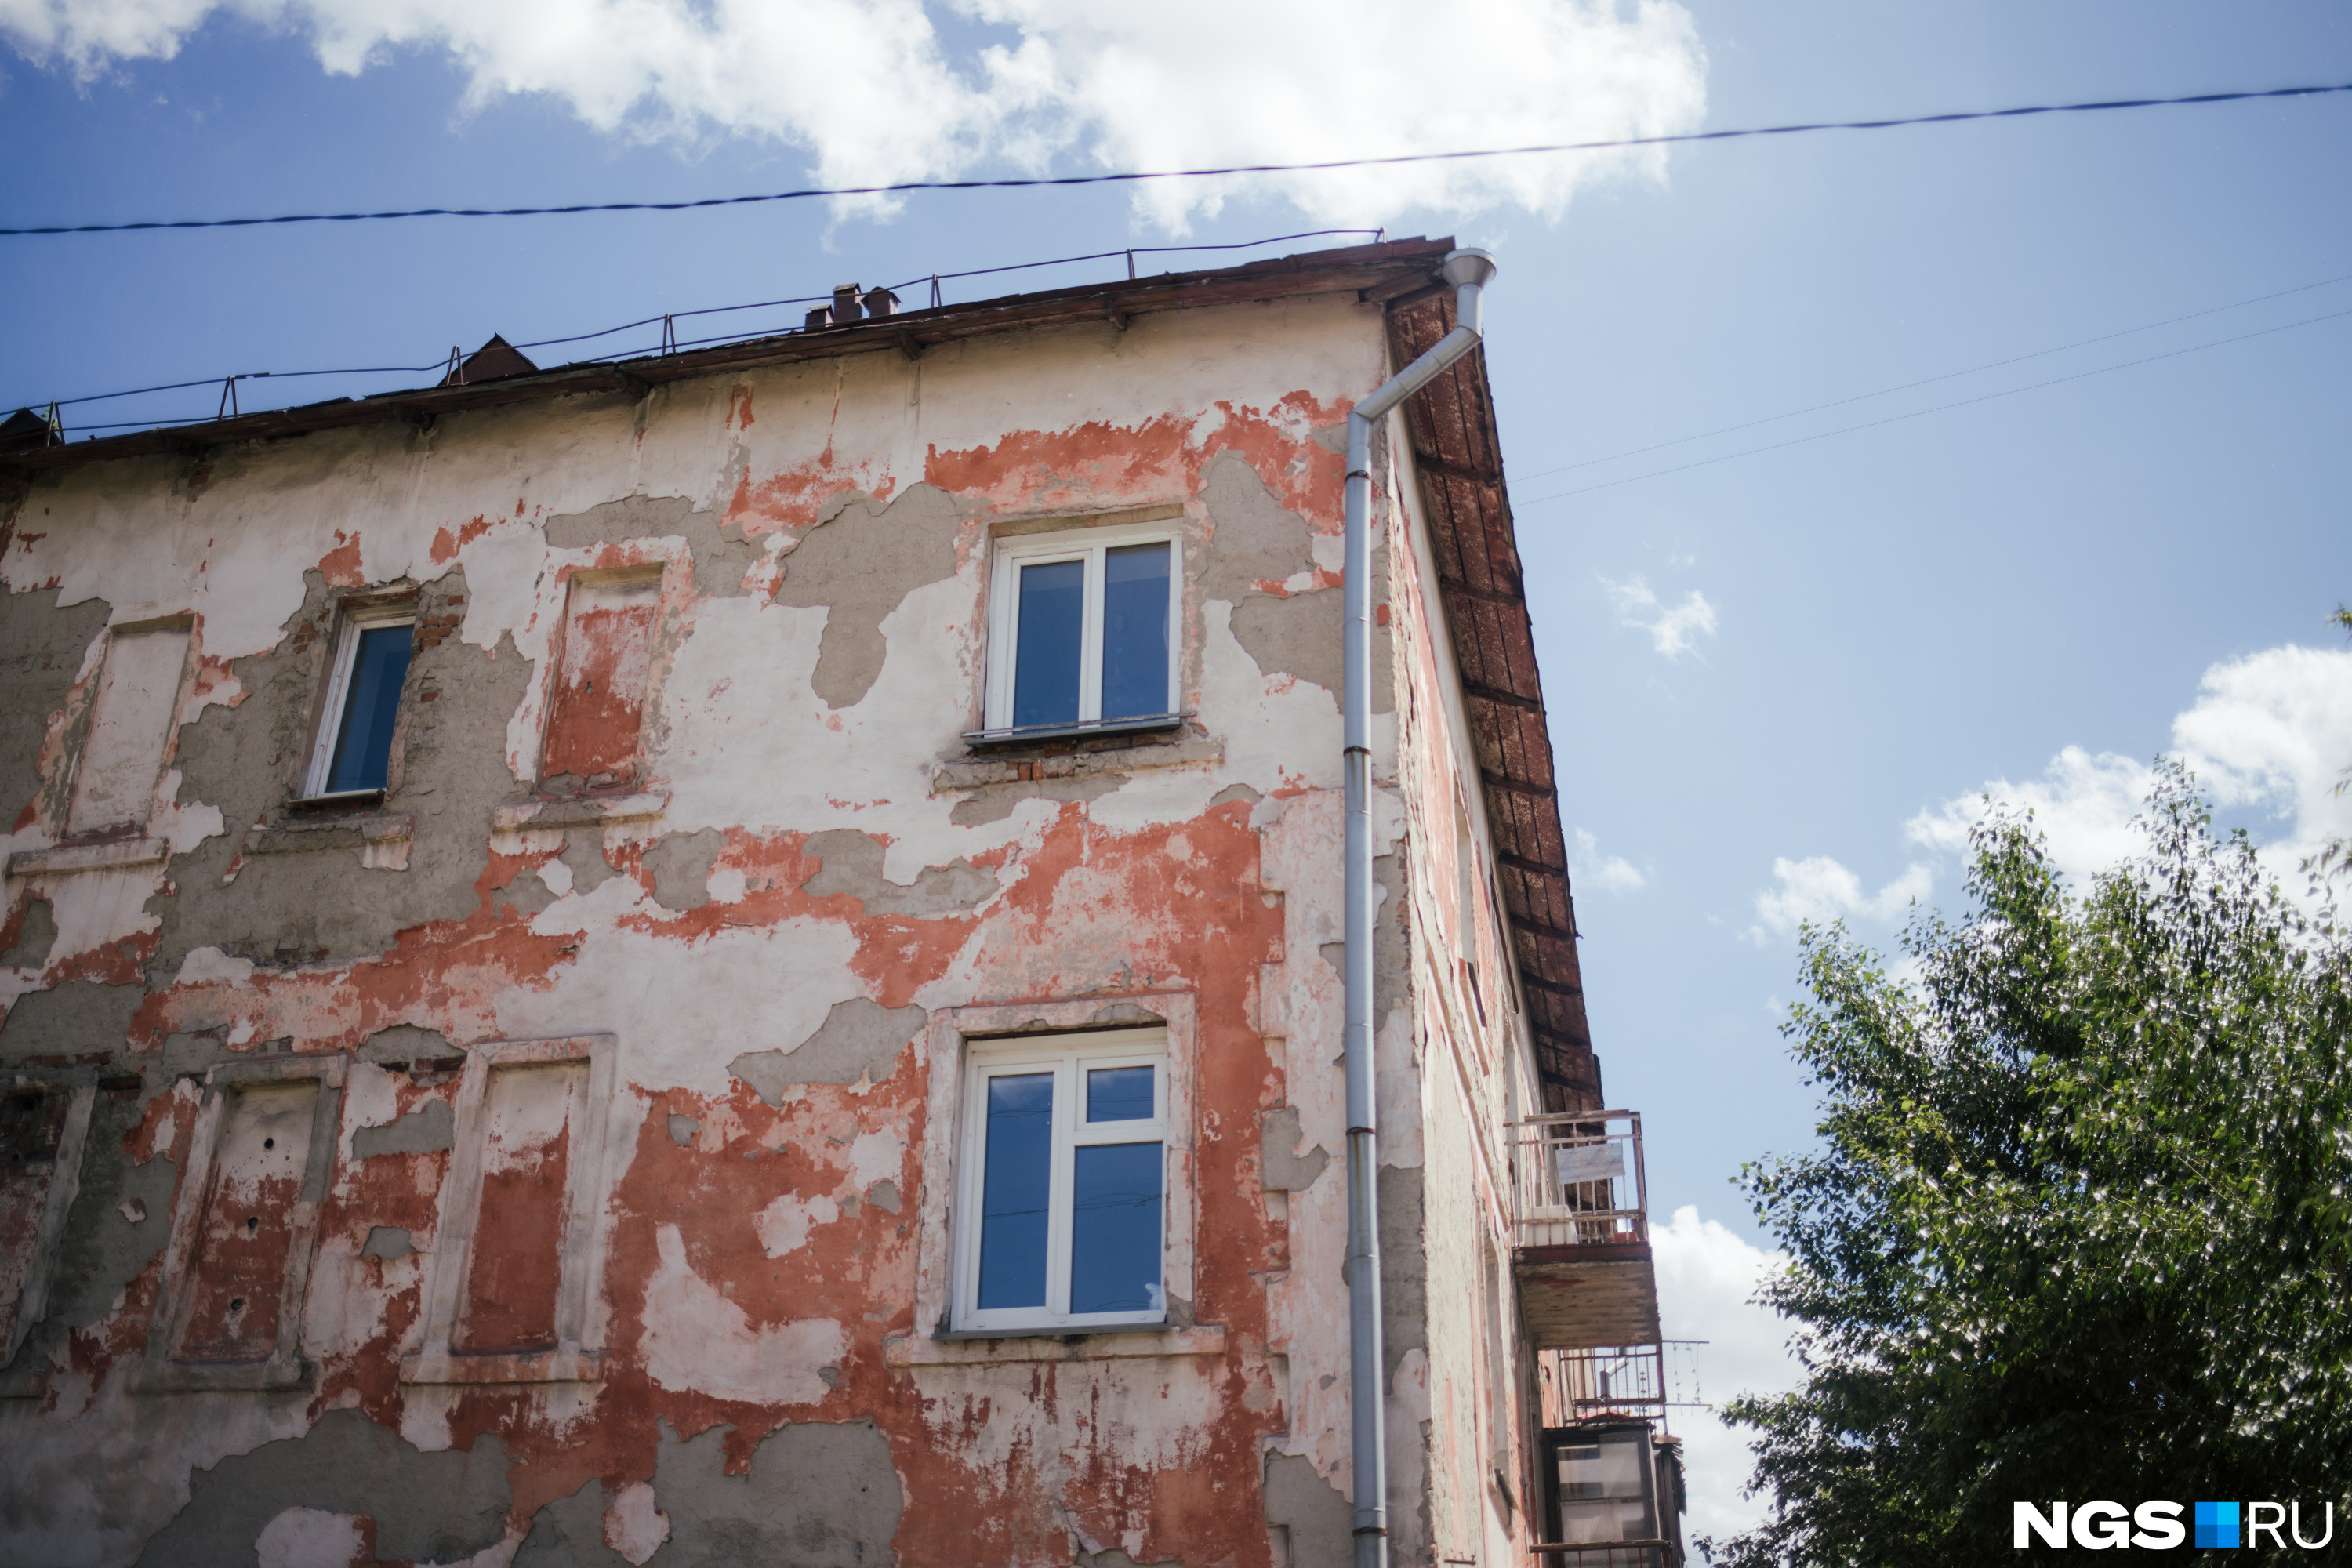 Малоэтажки с облупившимися фасадами в районе Владимировской — тоже Нахаловка